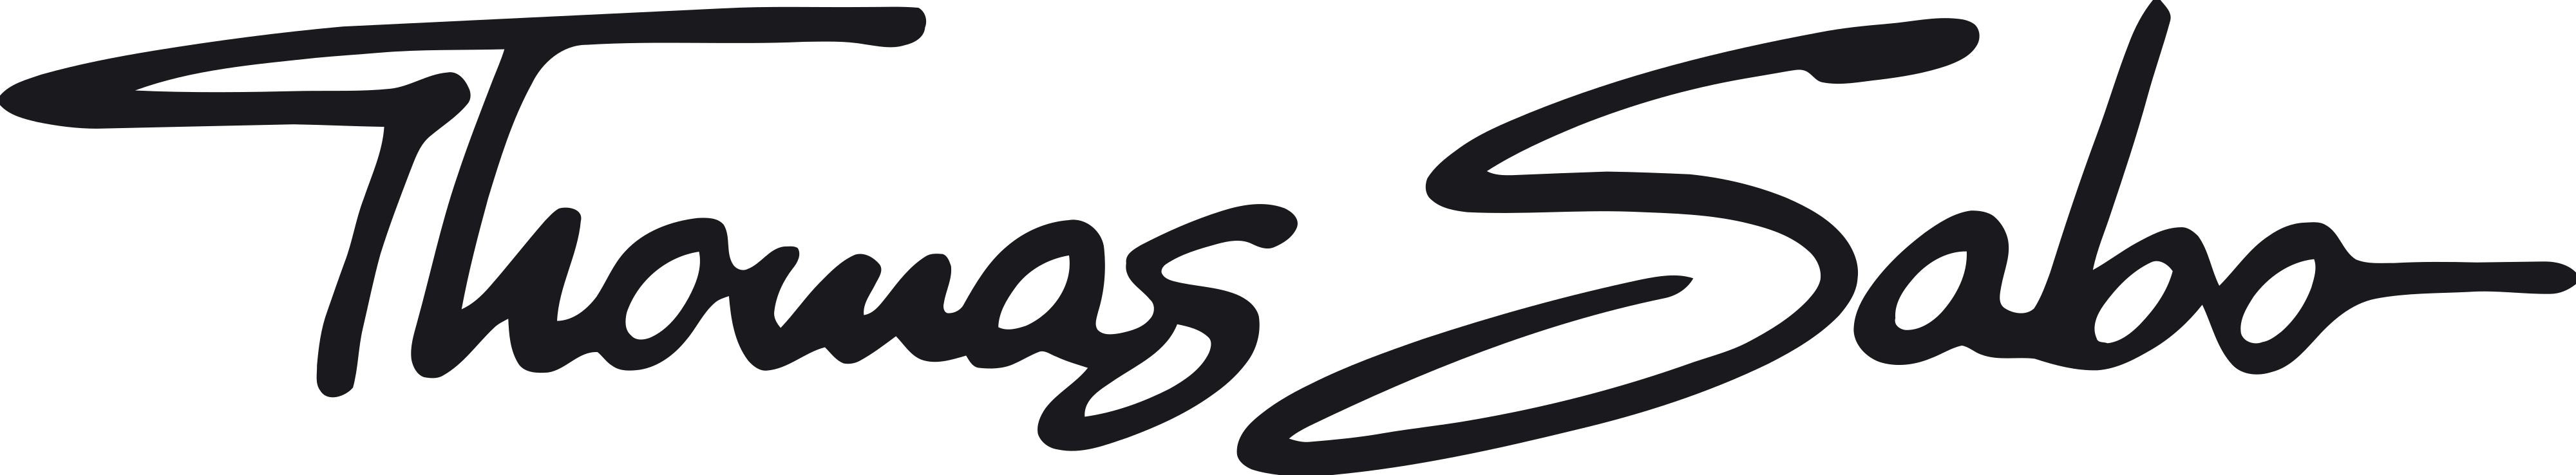 Logo der Marke Thomas Sabo